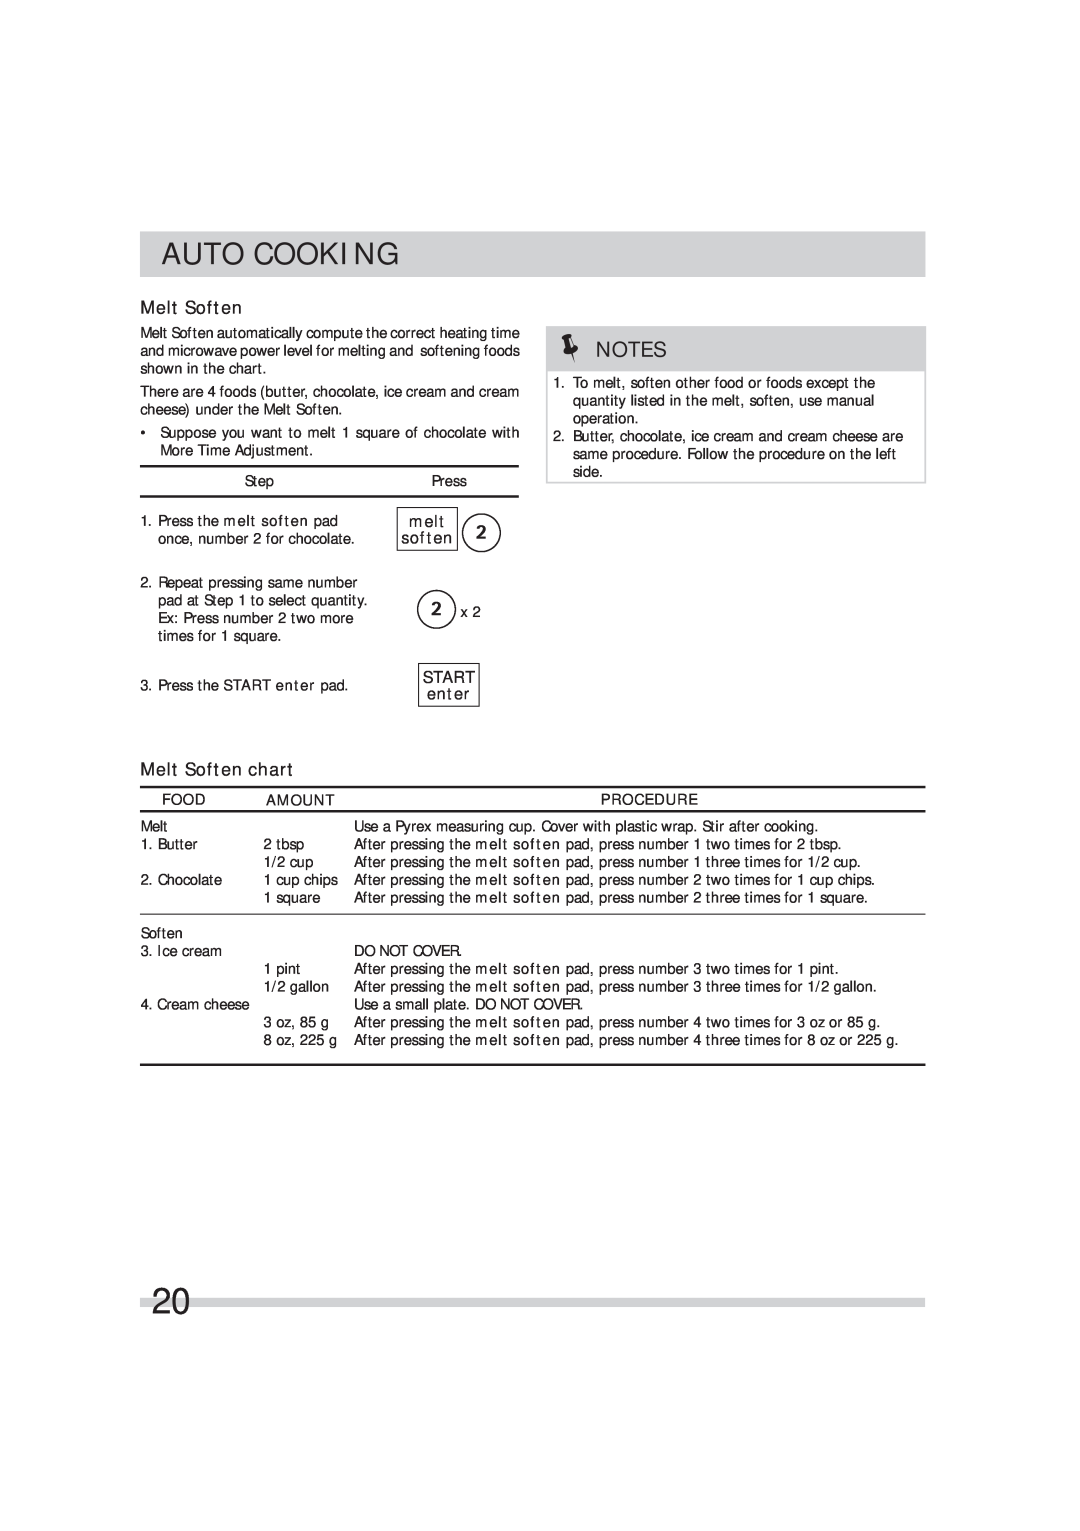 Frigidaire 316495054 manual Melt Soften chart, melt soften, START enter, Auto Cooking, Food, Amount, Procedure 